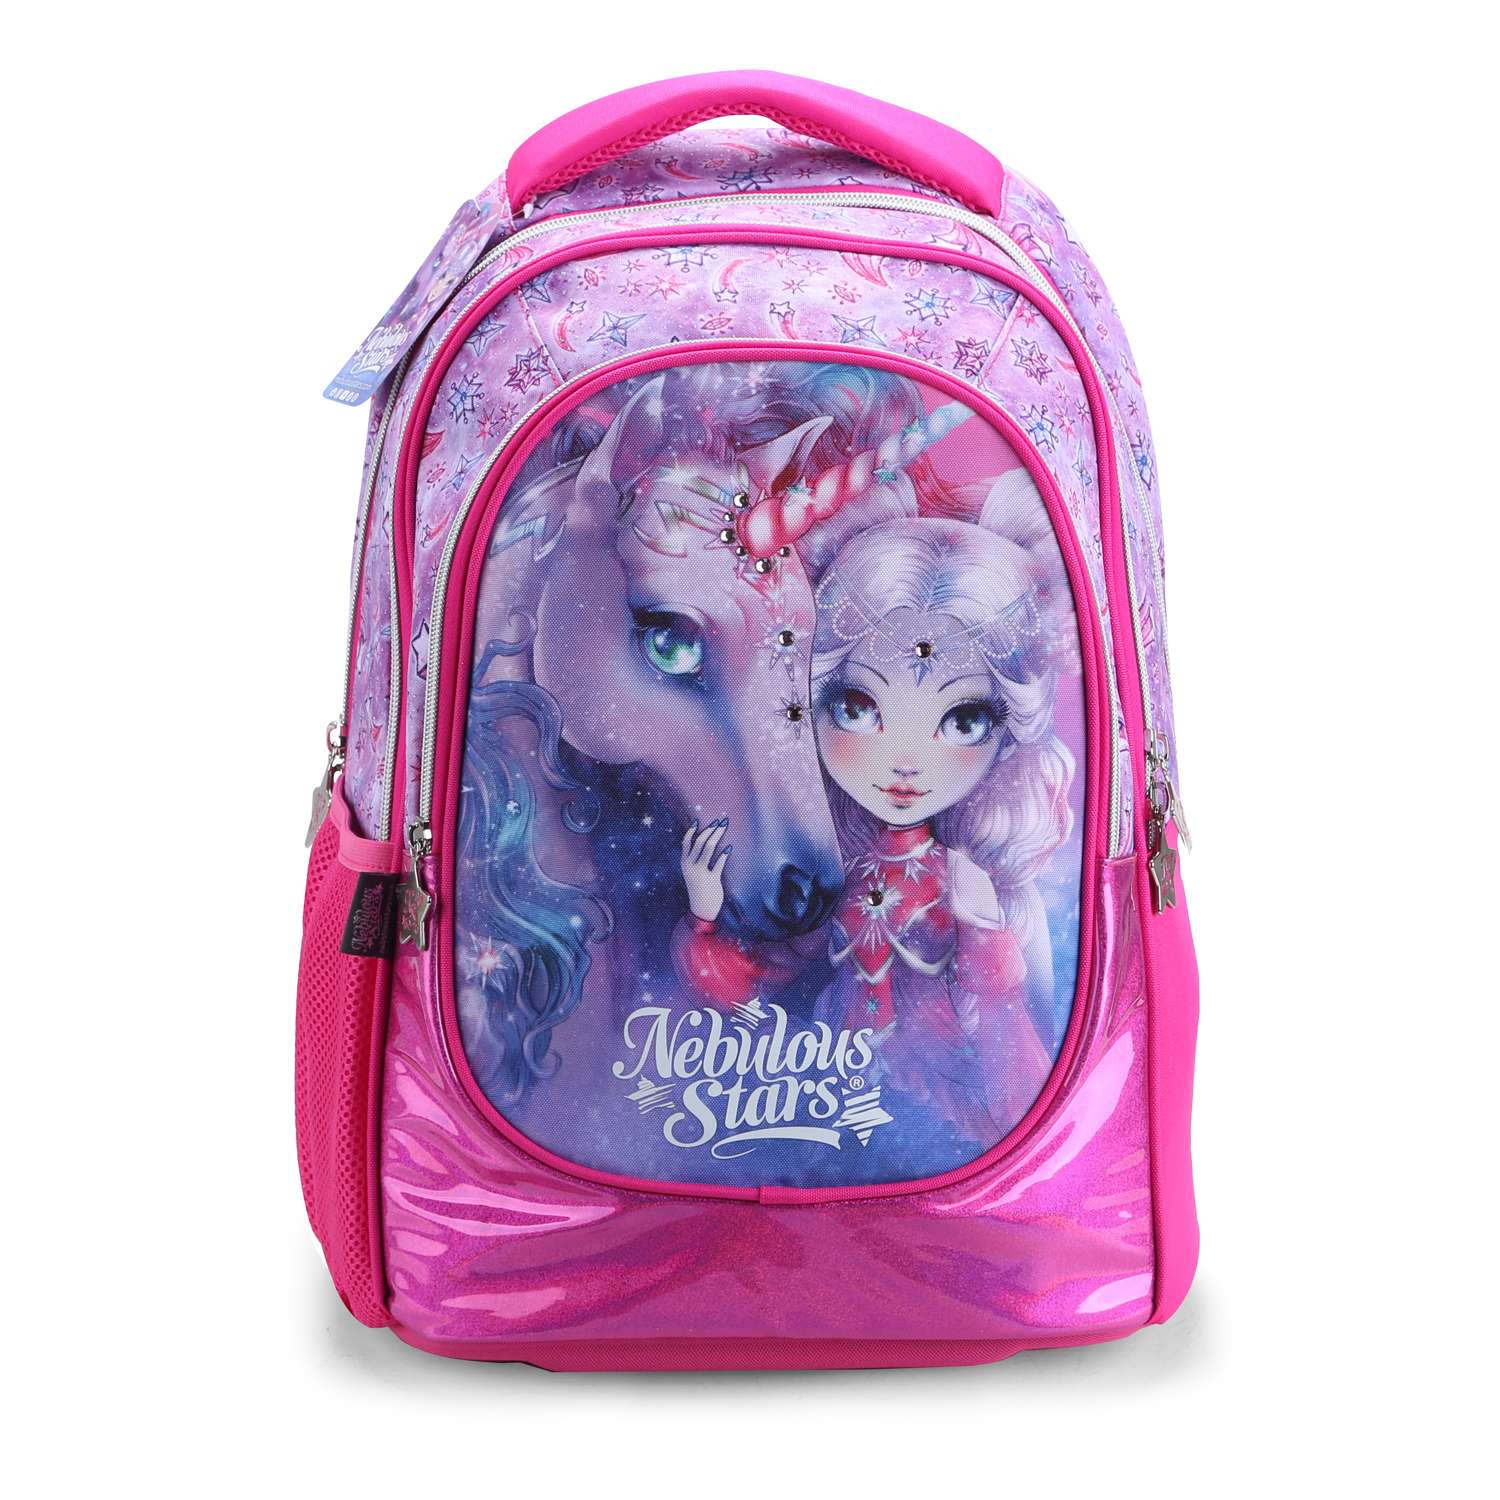 Школьный рюкзак Nebulous Stars для девочек - фото 1